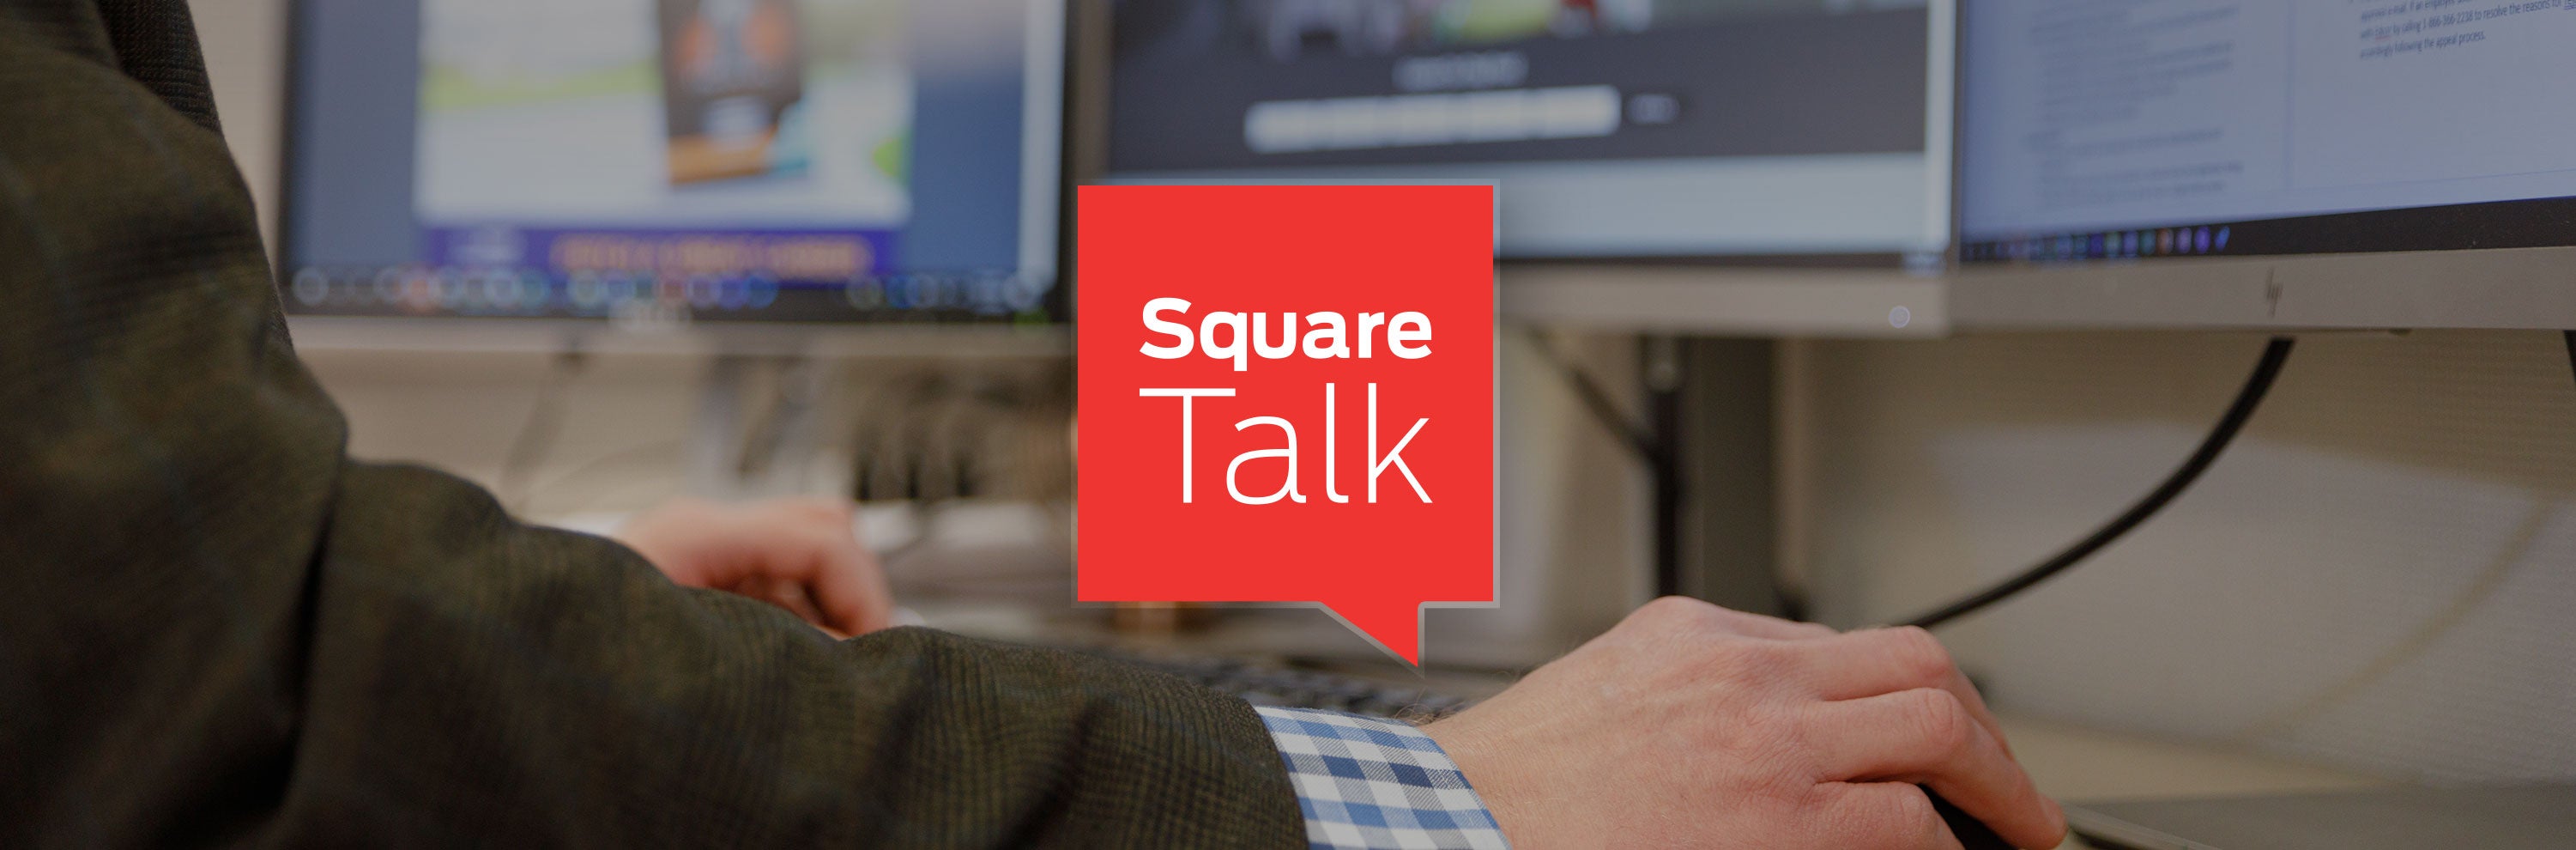 Square Talk icon